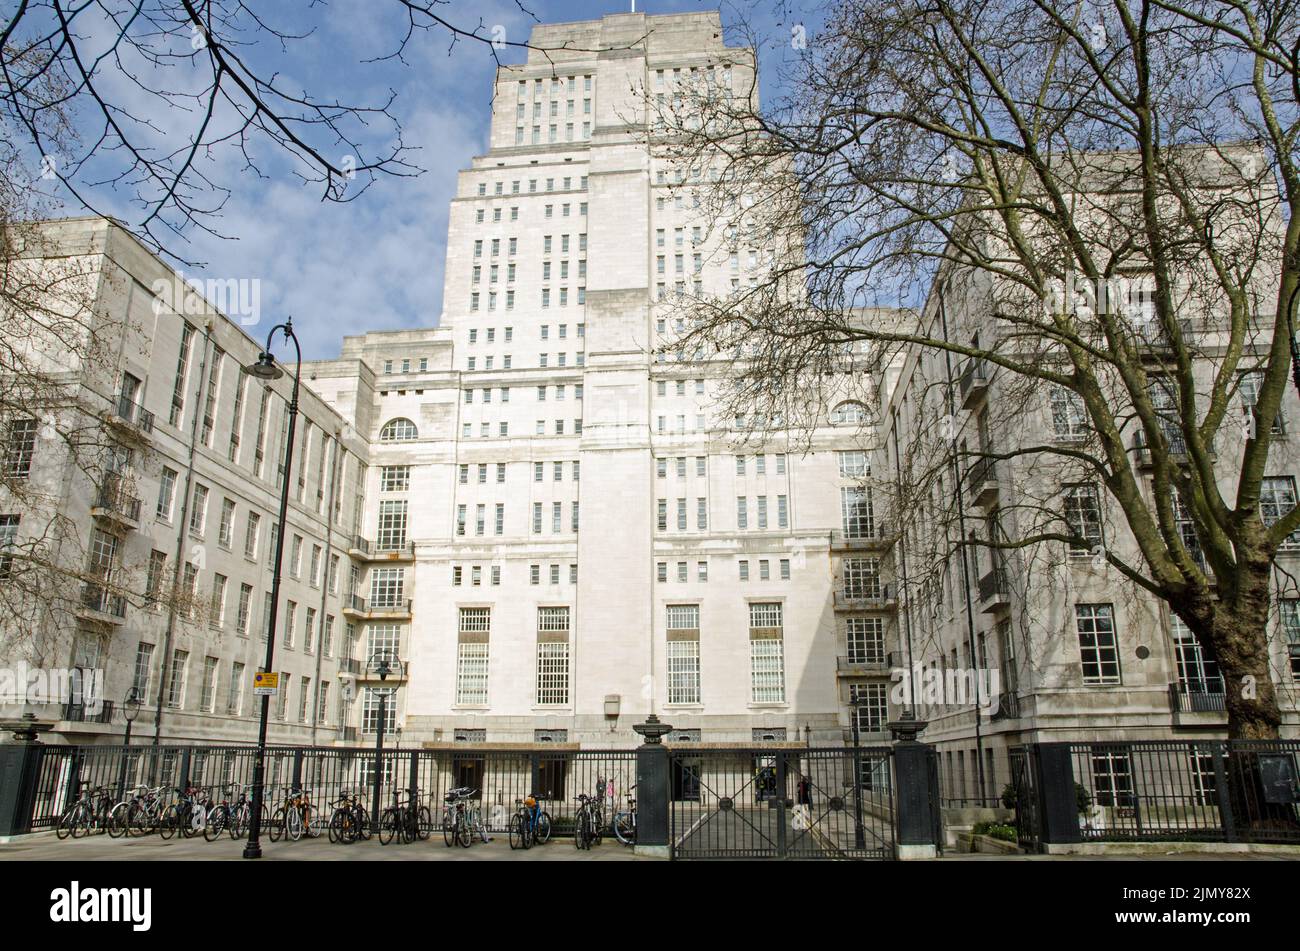 Senate House, el principal edificio administrativo de la Universidad de Londres en el corazón de Bloomsbury en el centro de Londres. Visto desde Malet Street Foto de stock